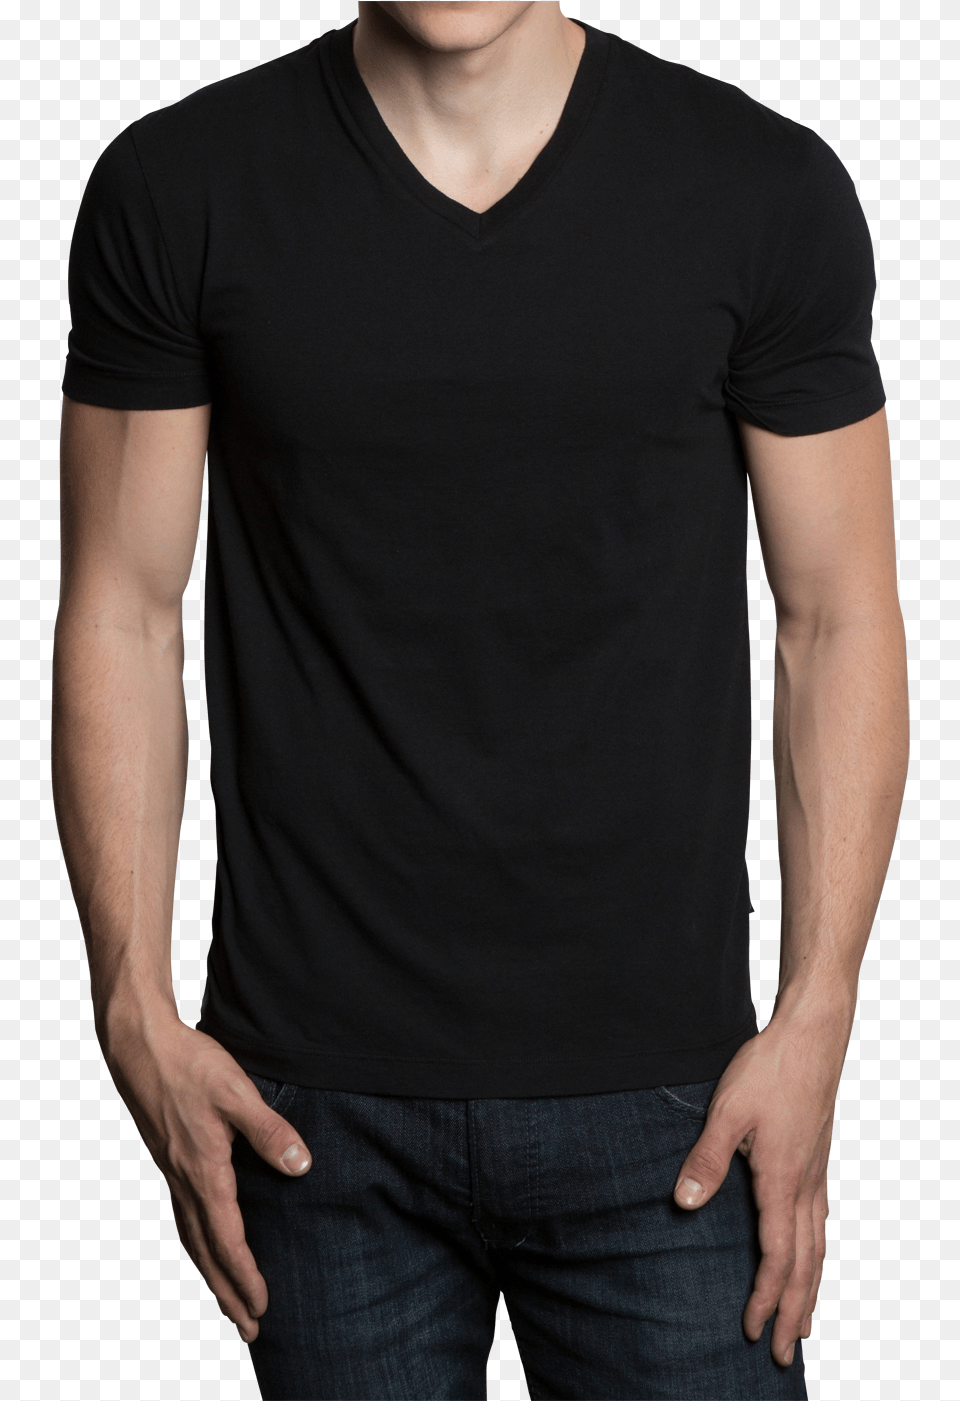 Black Shirt Design T Shirt Boutique, T-shirt, Clothing, Person, Pants Png Image